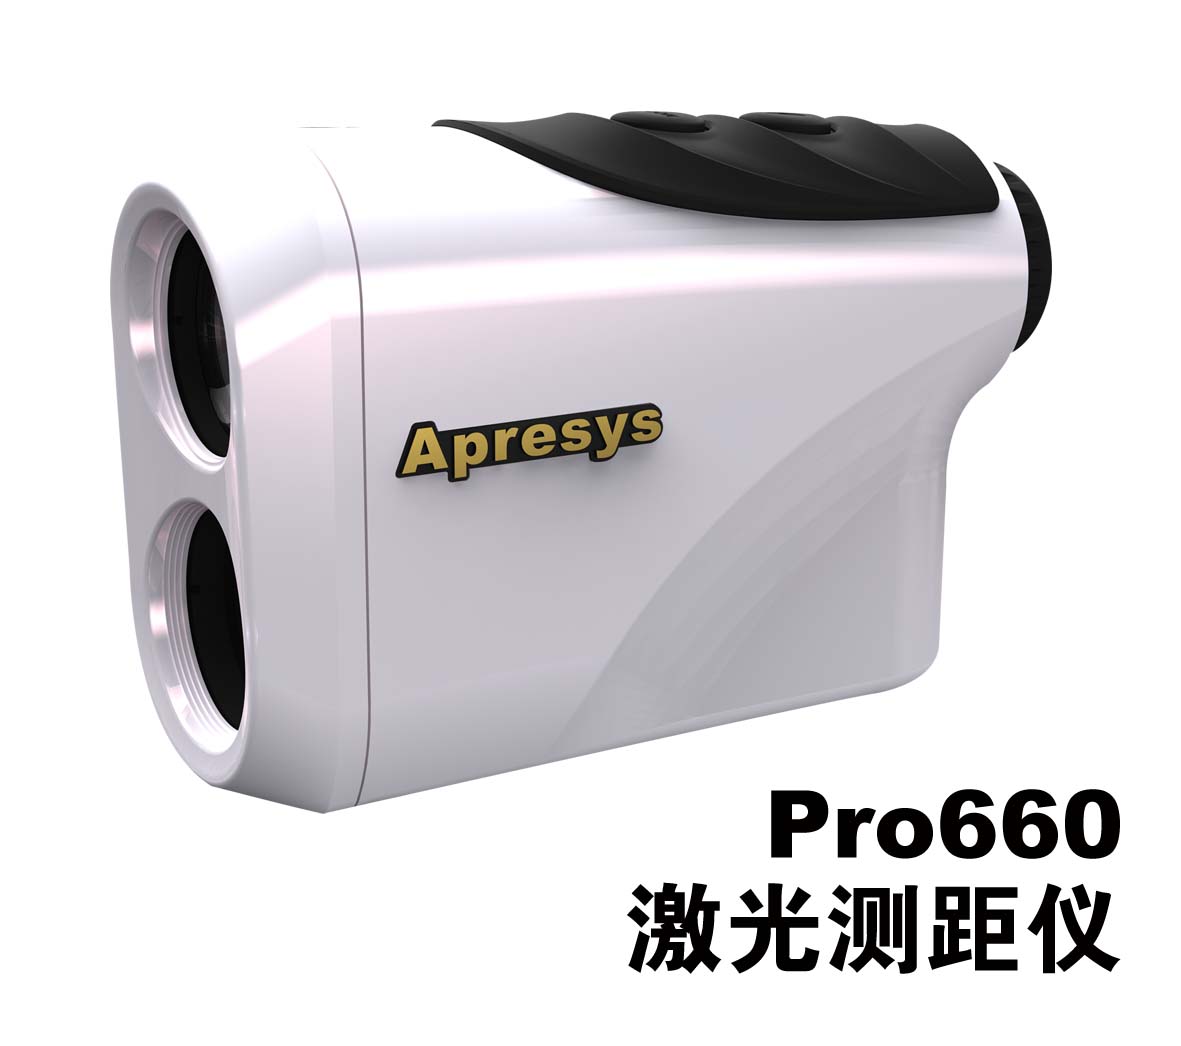 美国艾普瑞PRO660激光测距仪